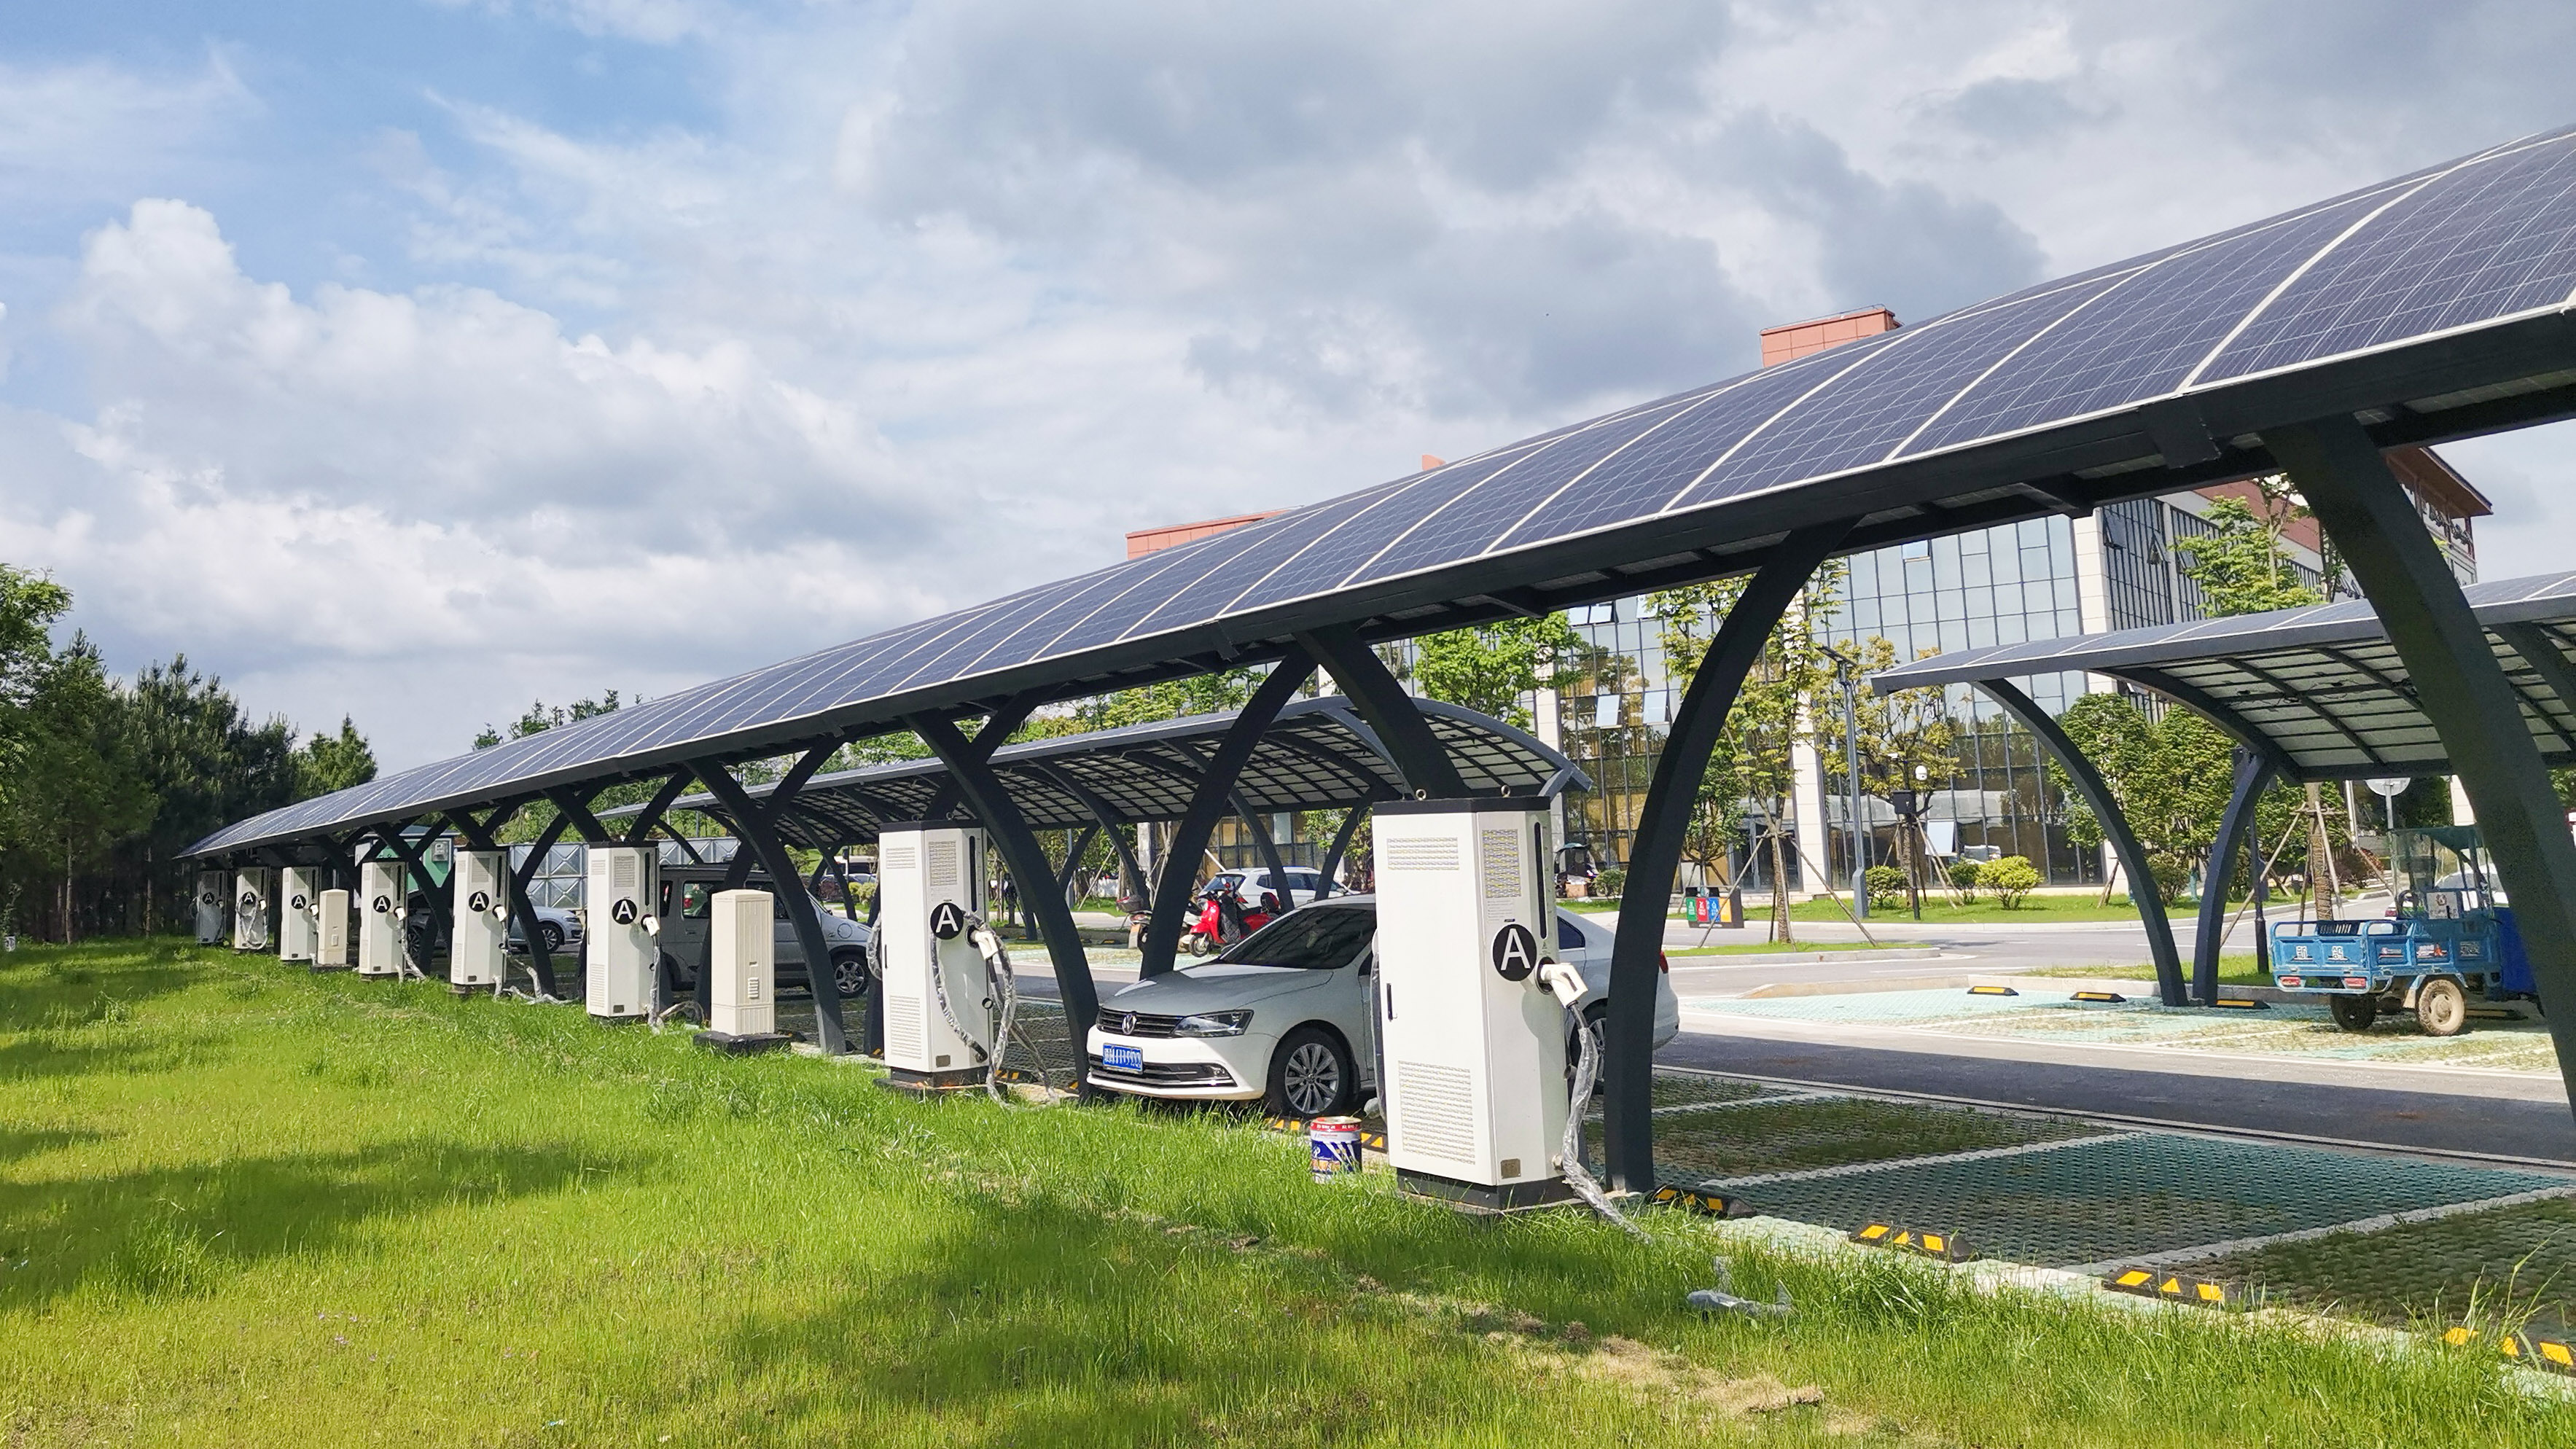 太阳能光伏车棚系统-北京长和信泰能源技术有限公司